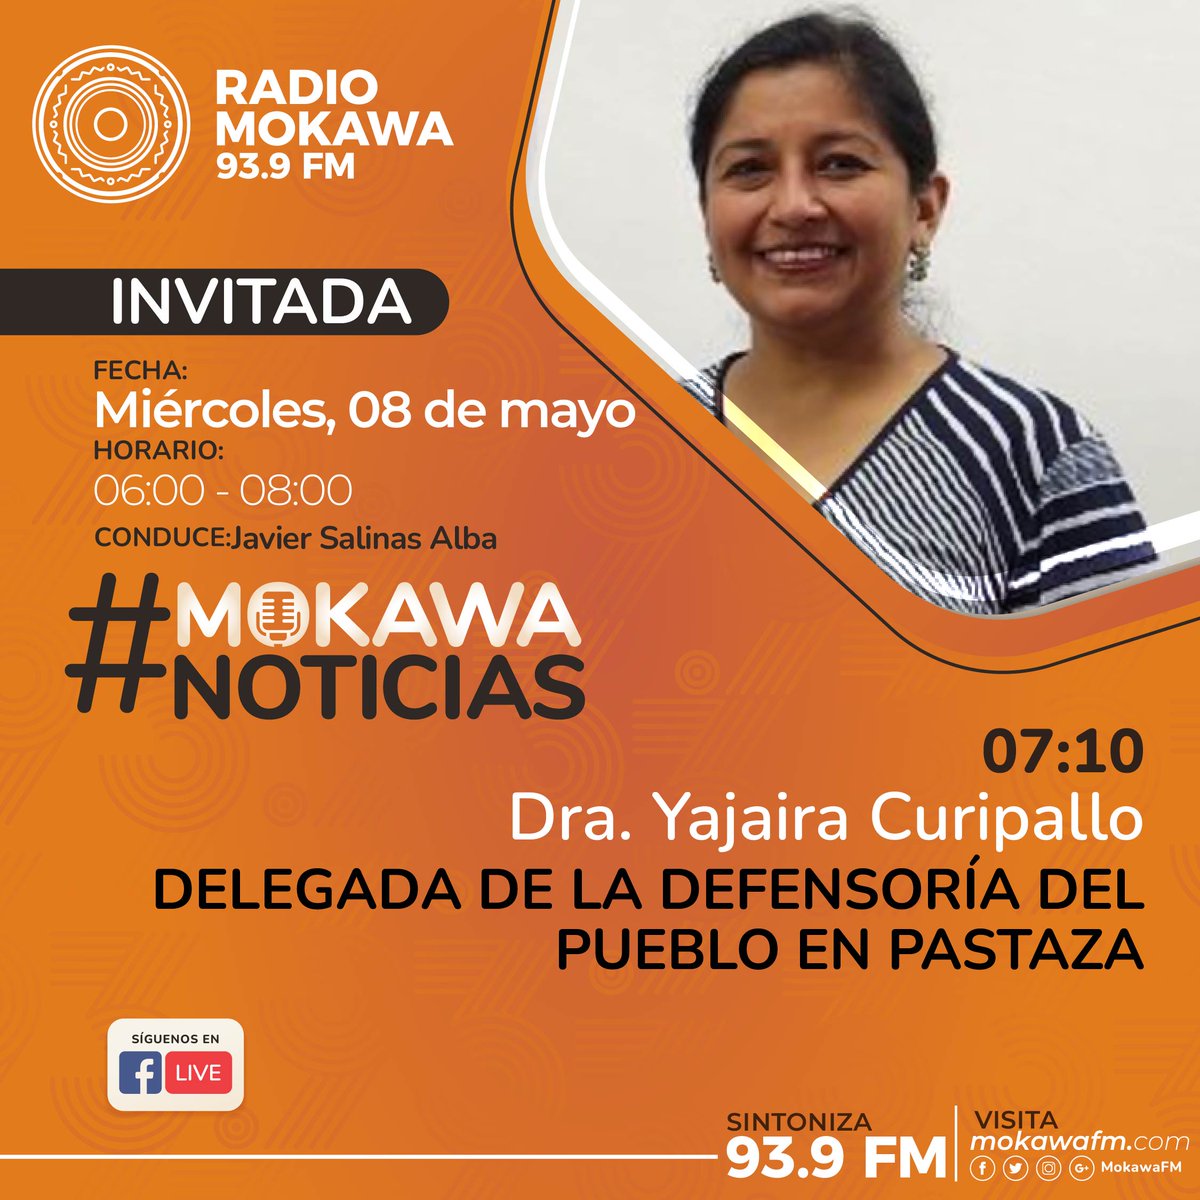 #MokawaNoticias | Este miércoles 08 de mayo, en #LaEntrevista nos acompaña la Dra. Yajaira Curipallo, Delegada de la Defensoría del Pueblo en Pastaza. Siga la entrevista en vivo en los 93.9 FM en la Amazonía centro y en mokawafm.com